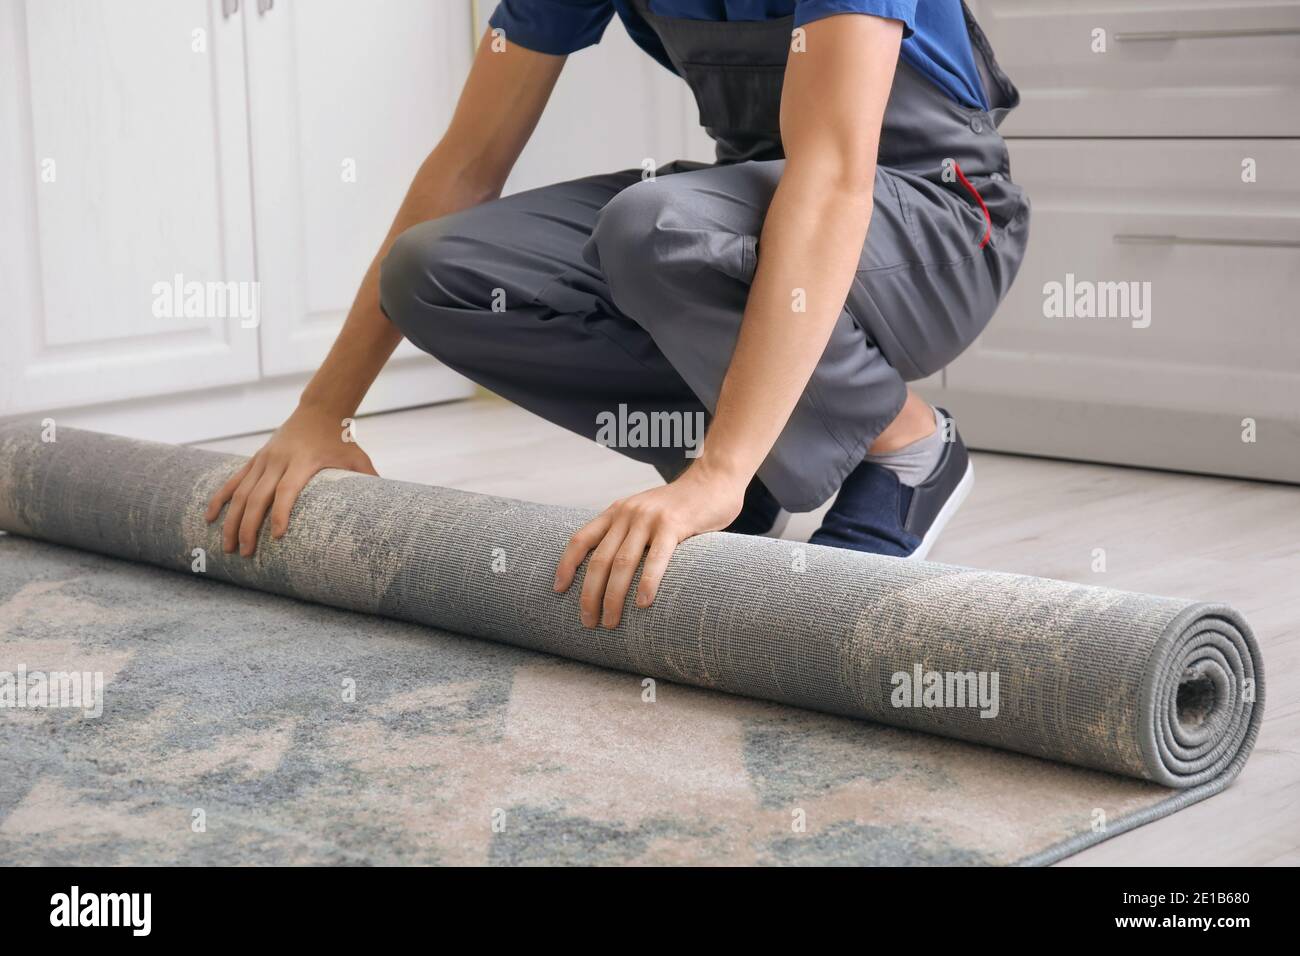 Mann rollt Teppich auf dem Boden im Zimmer Stockfotografie - Alamy